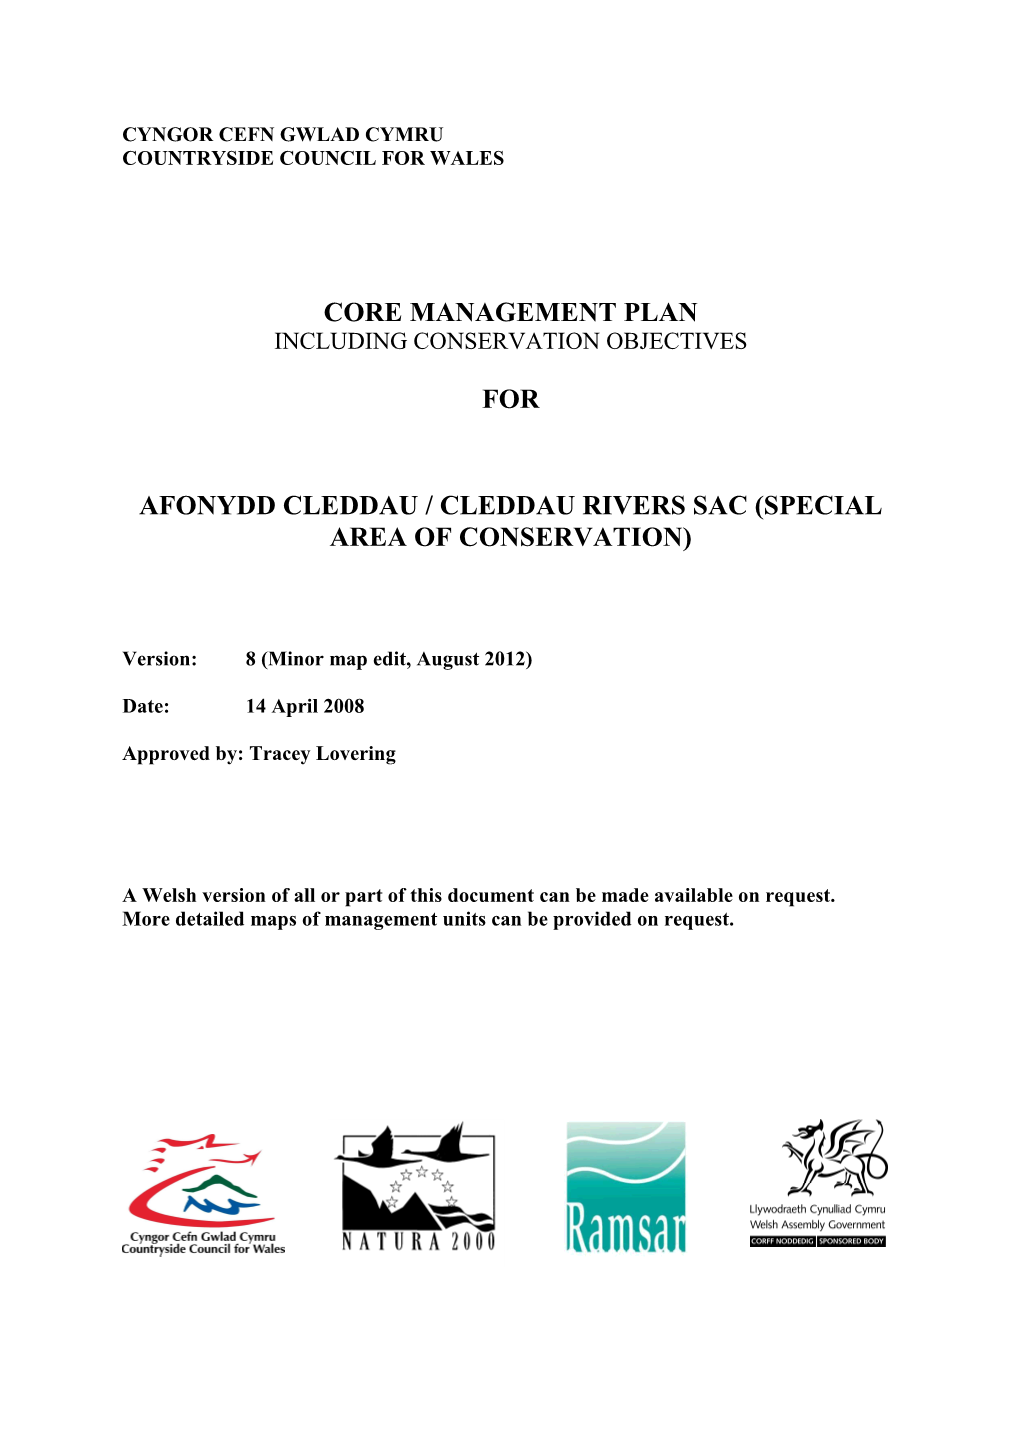 2012 08 07 Afonydd Cleddau Cleddau Rivers SAC Management